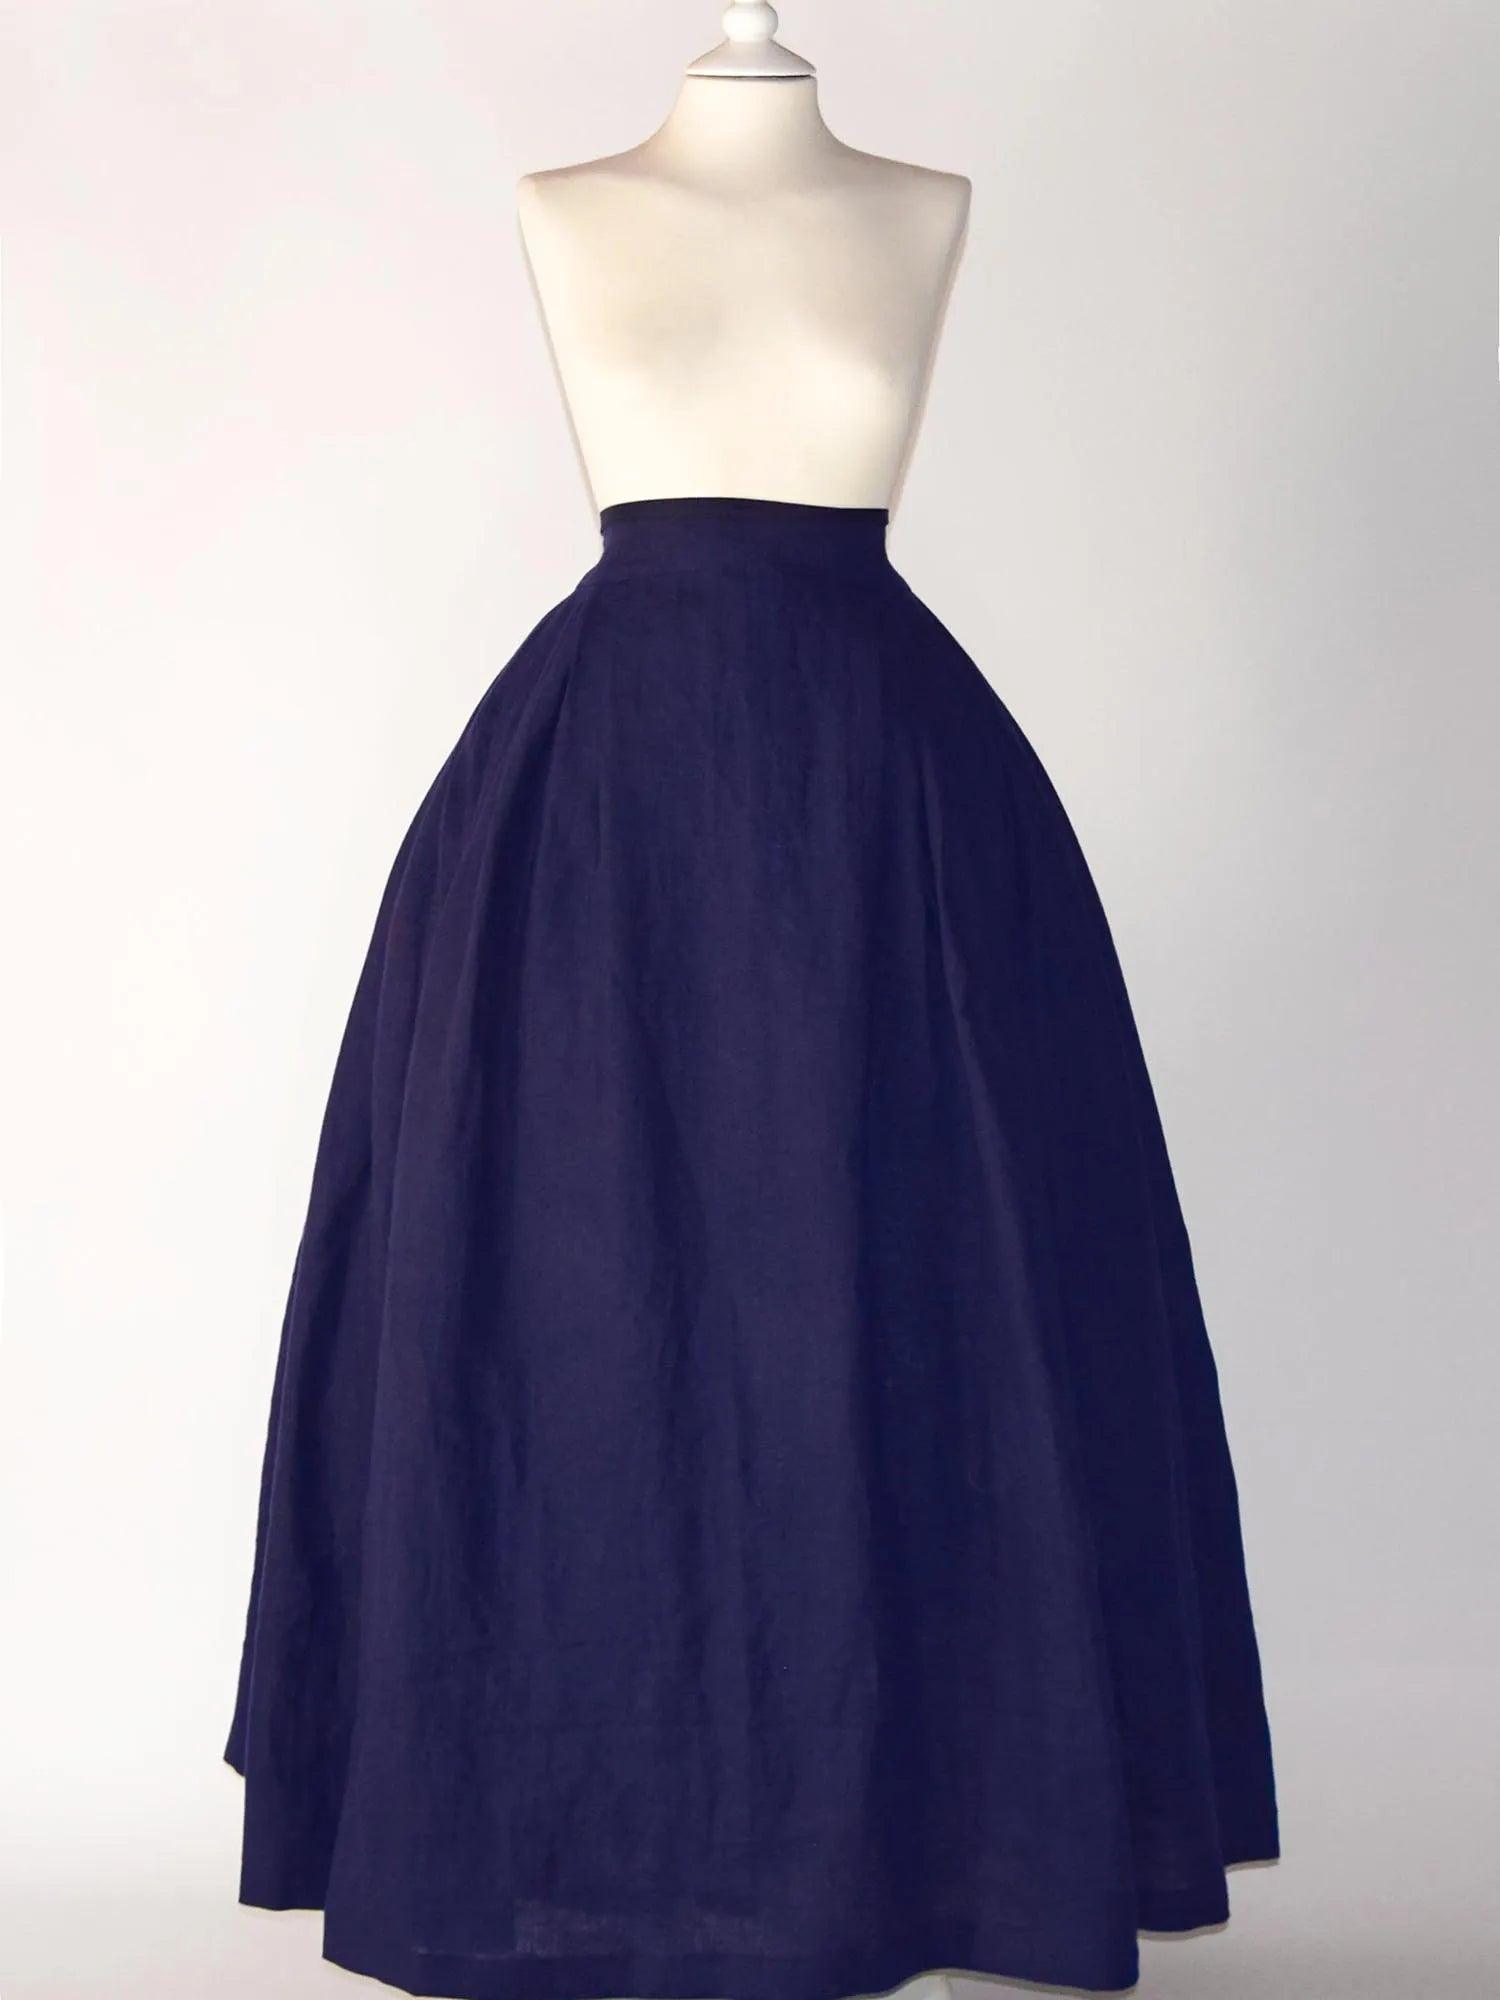 HELOISE, Historical Skirt in Night Blue Linen - Atelier Serraspina